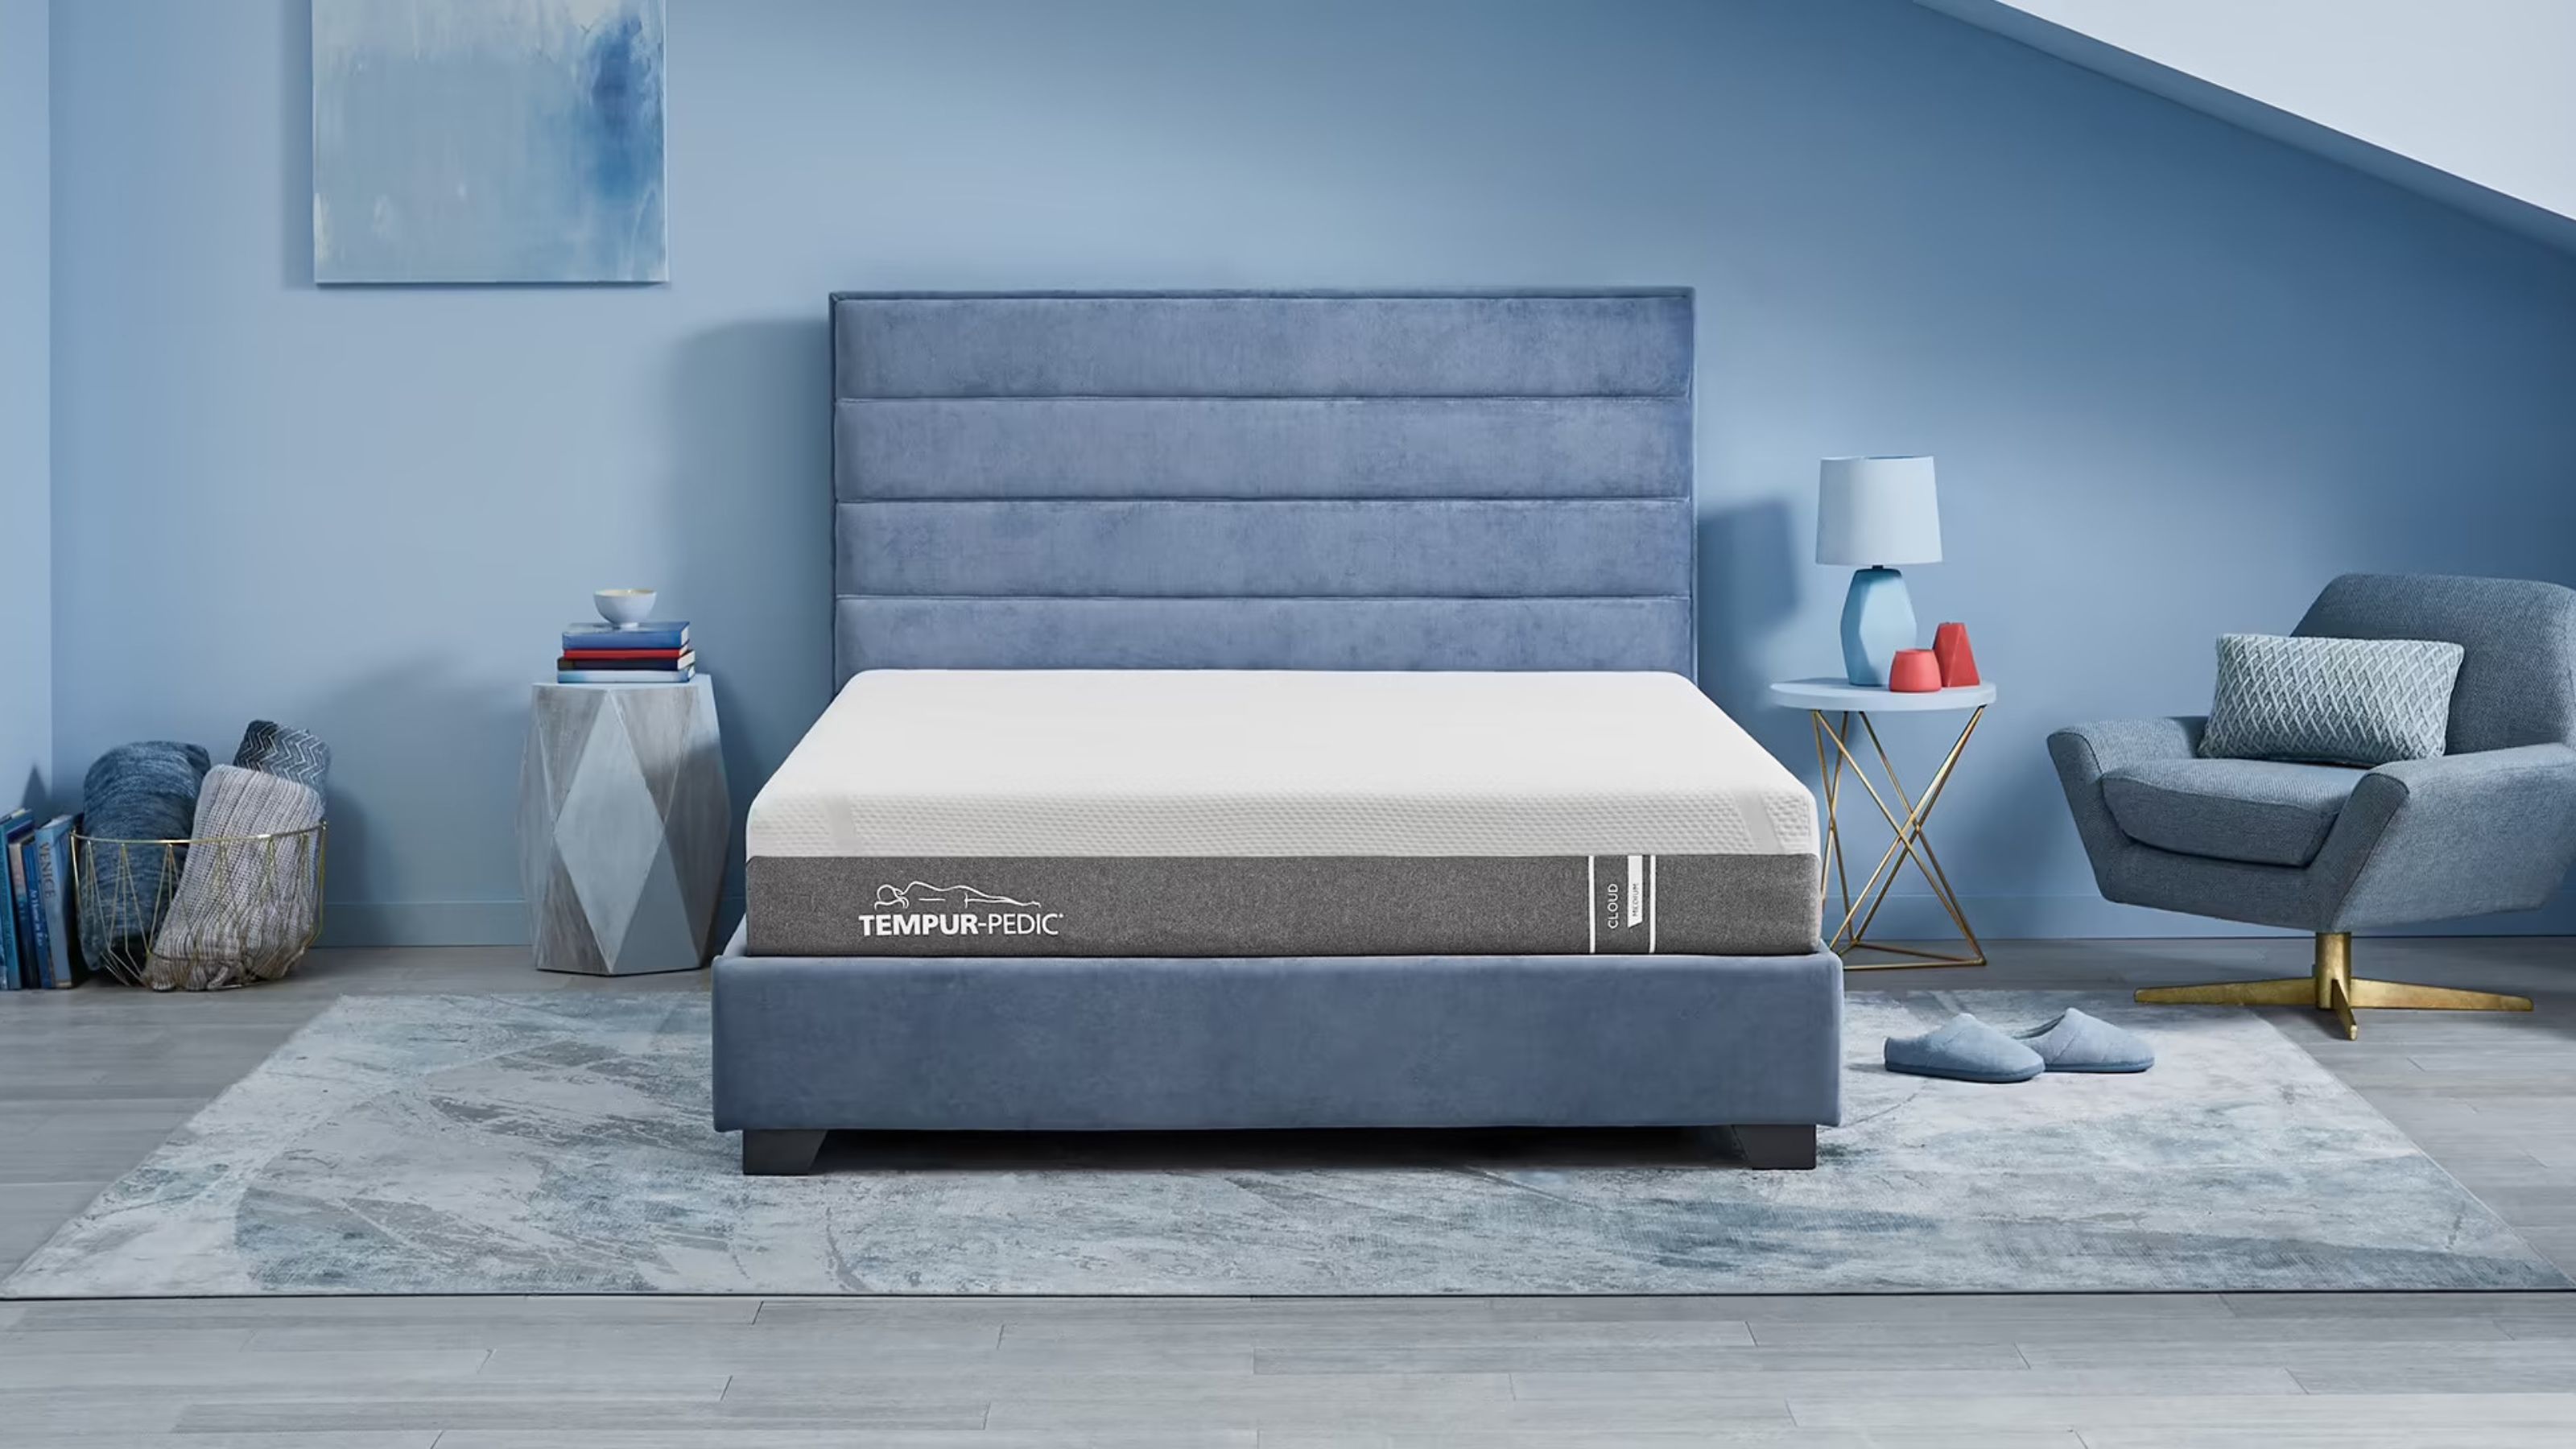 tempurpedic air mattress soft in center